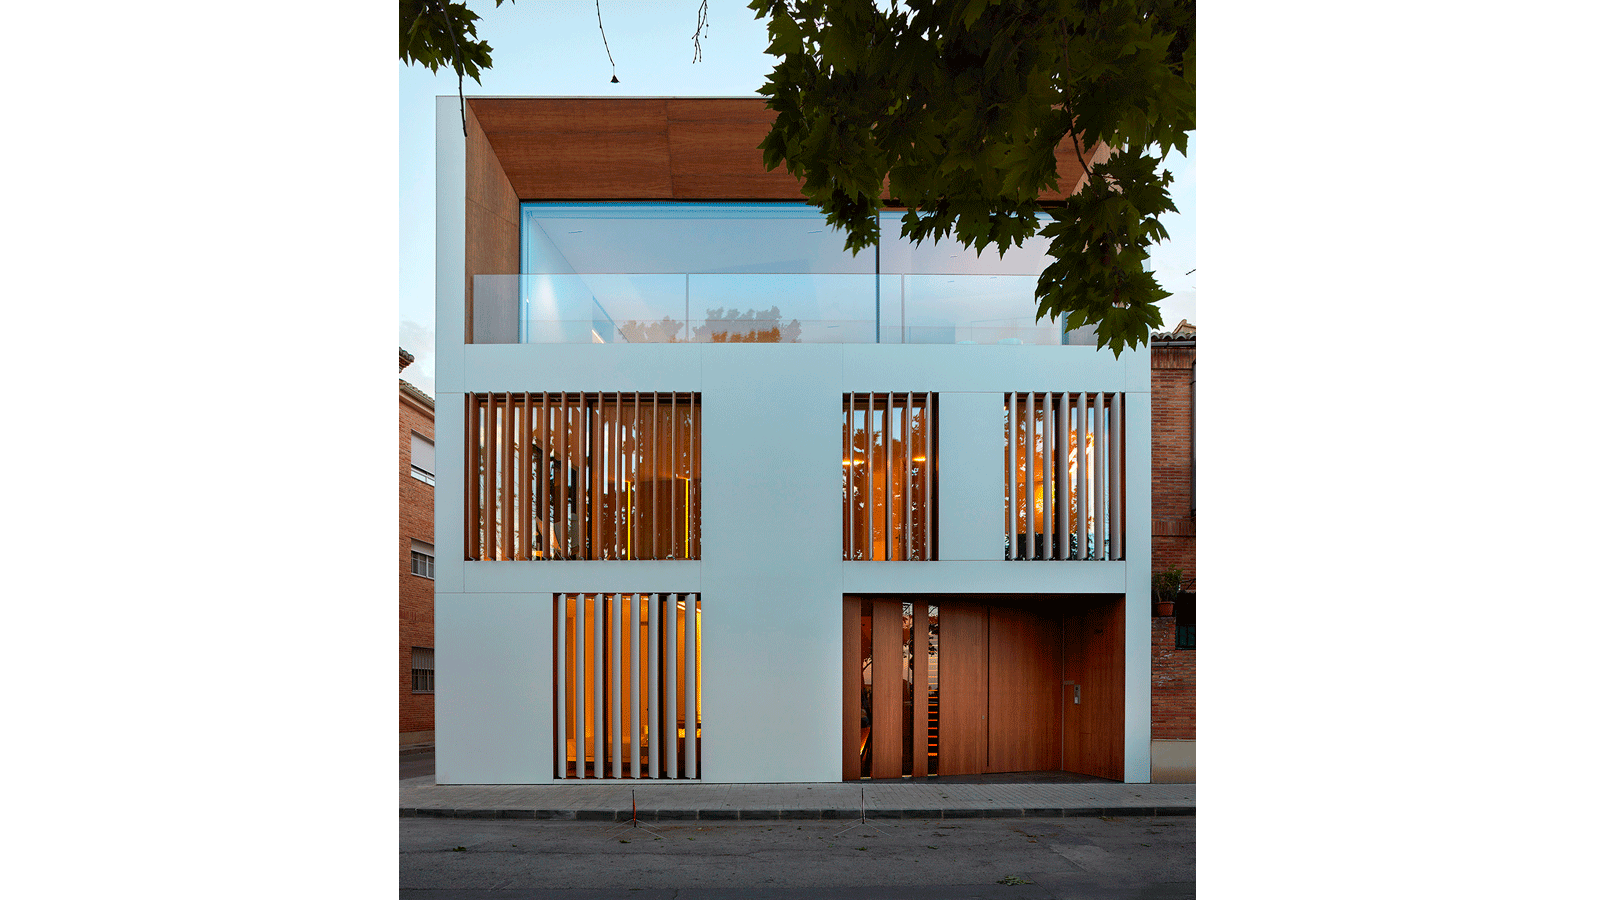 Projets Groupe PORCELANOSA : Géométrie minimaliste dans la «Maison dans le verger» de Ramón Esteve Studio